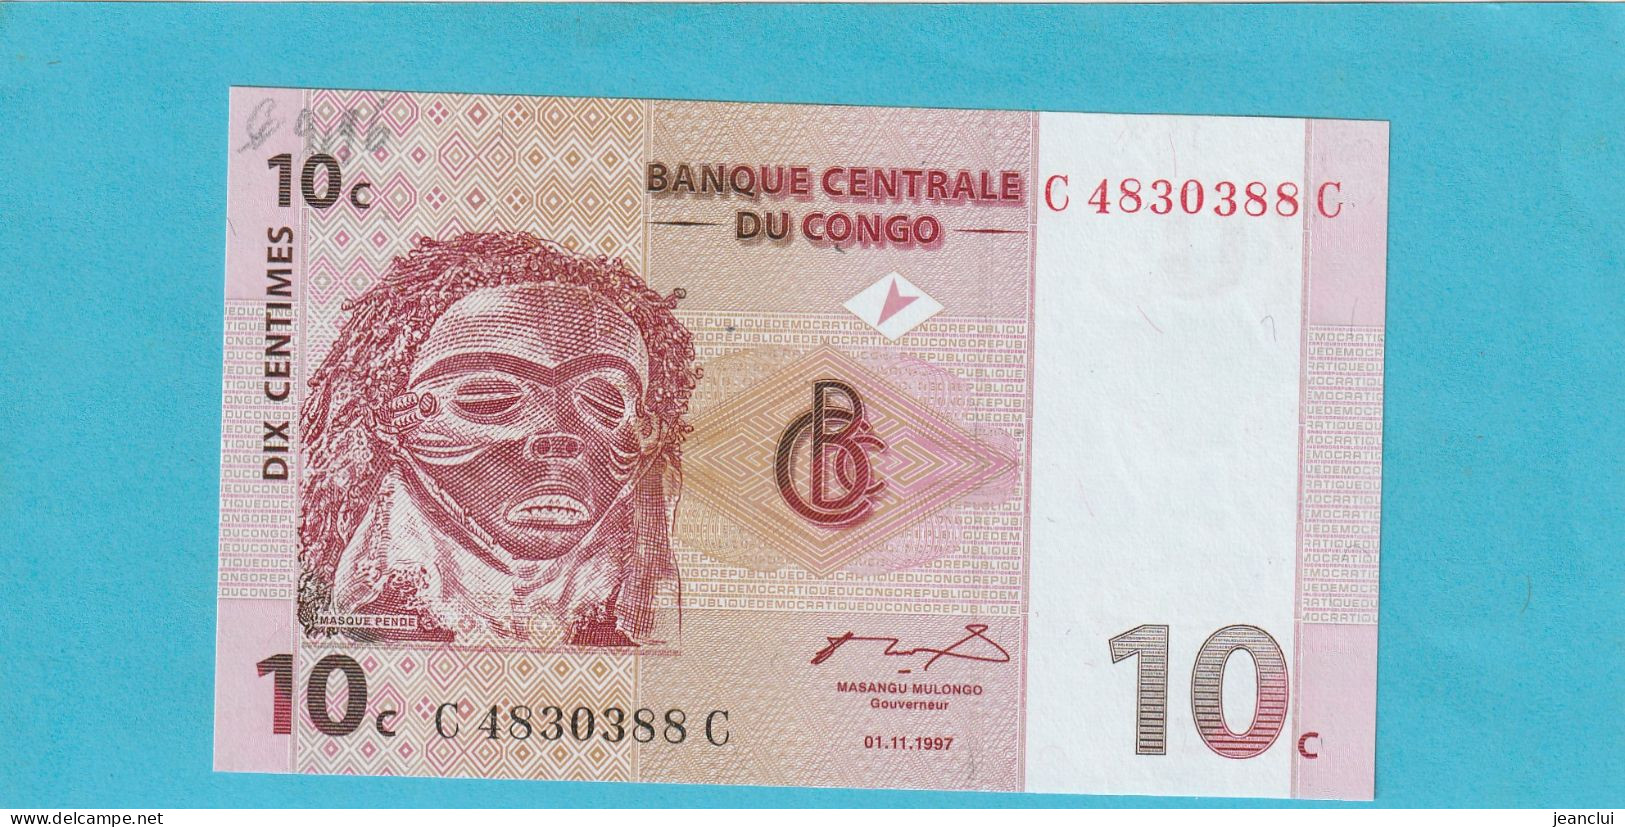 BANQUE CENTRALE DU CONGO  .  10 CENTIMES  .  01-11-1997  .  N°  C 4830388 C   .  BILLET EN TRES BEL ETAT  .  2 SCANNES - República Democrática Del Congo & Zaire